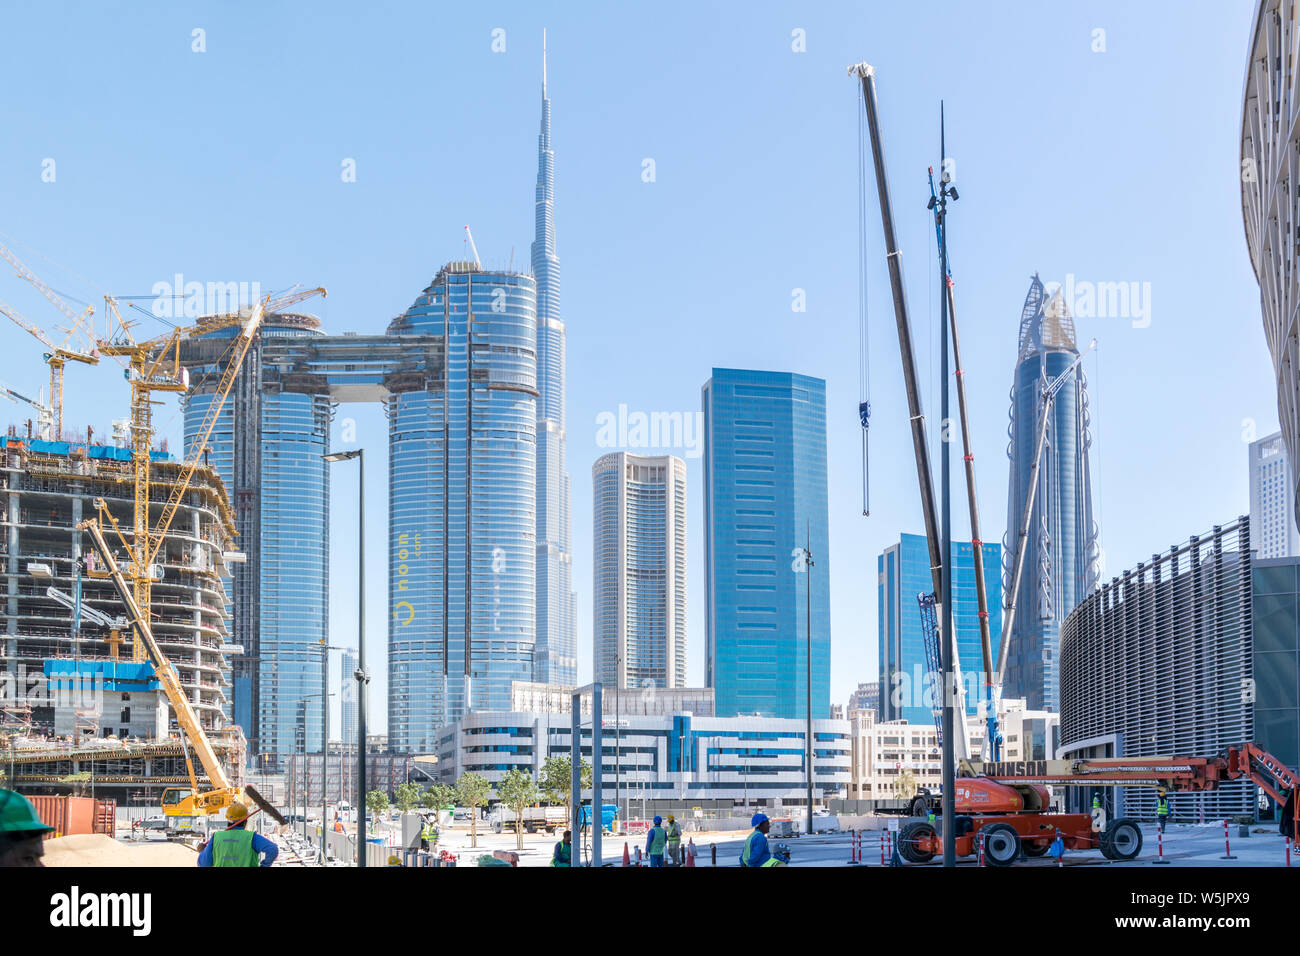 Dubai City Towers und Wahrzeichen - Burj Khalifa Tower-Baustelle und Krane Stockfoto